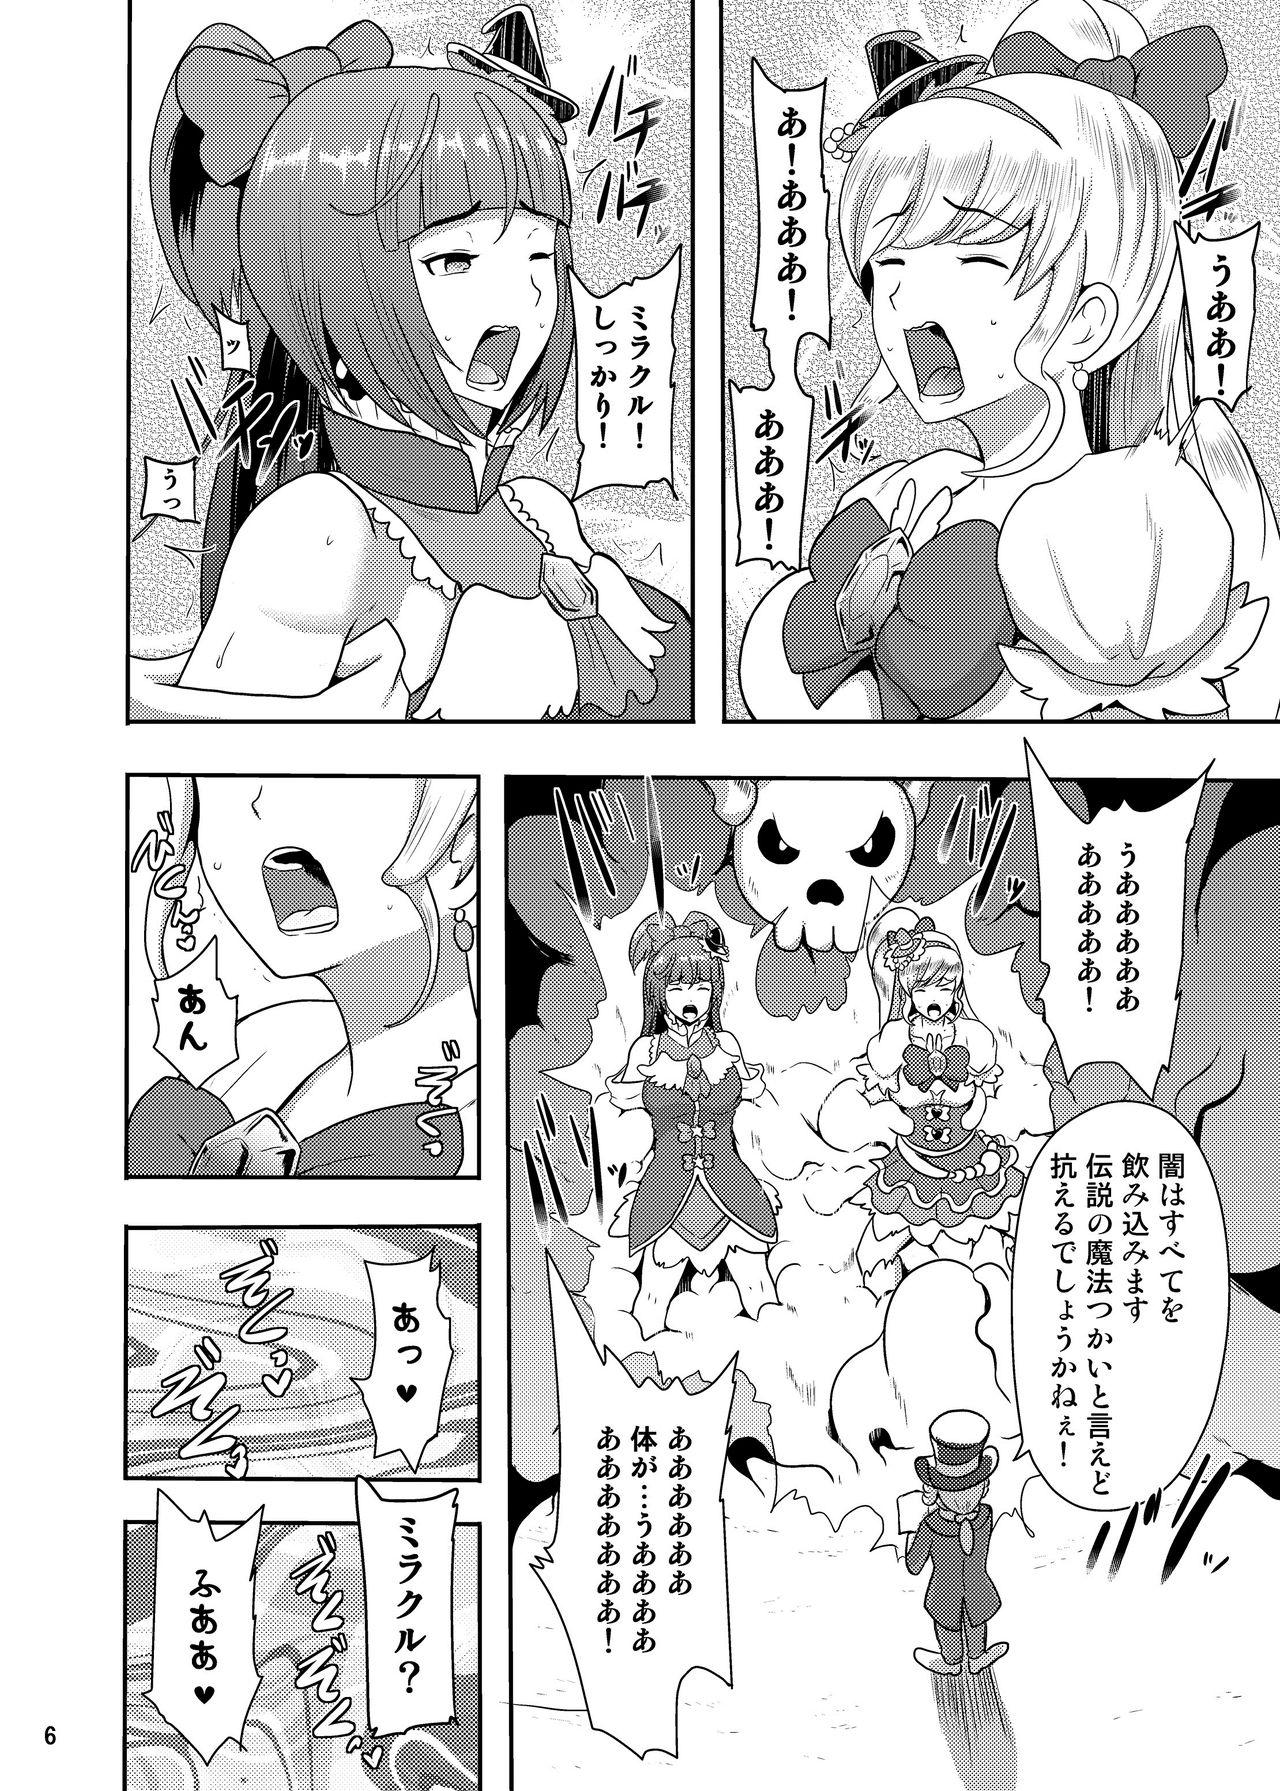 Spread Densetsu no Mahou Tsukai wa Kyou Inaku Narimashita - Maho girls precure Double Penetration - Page 6